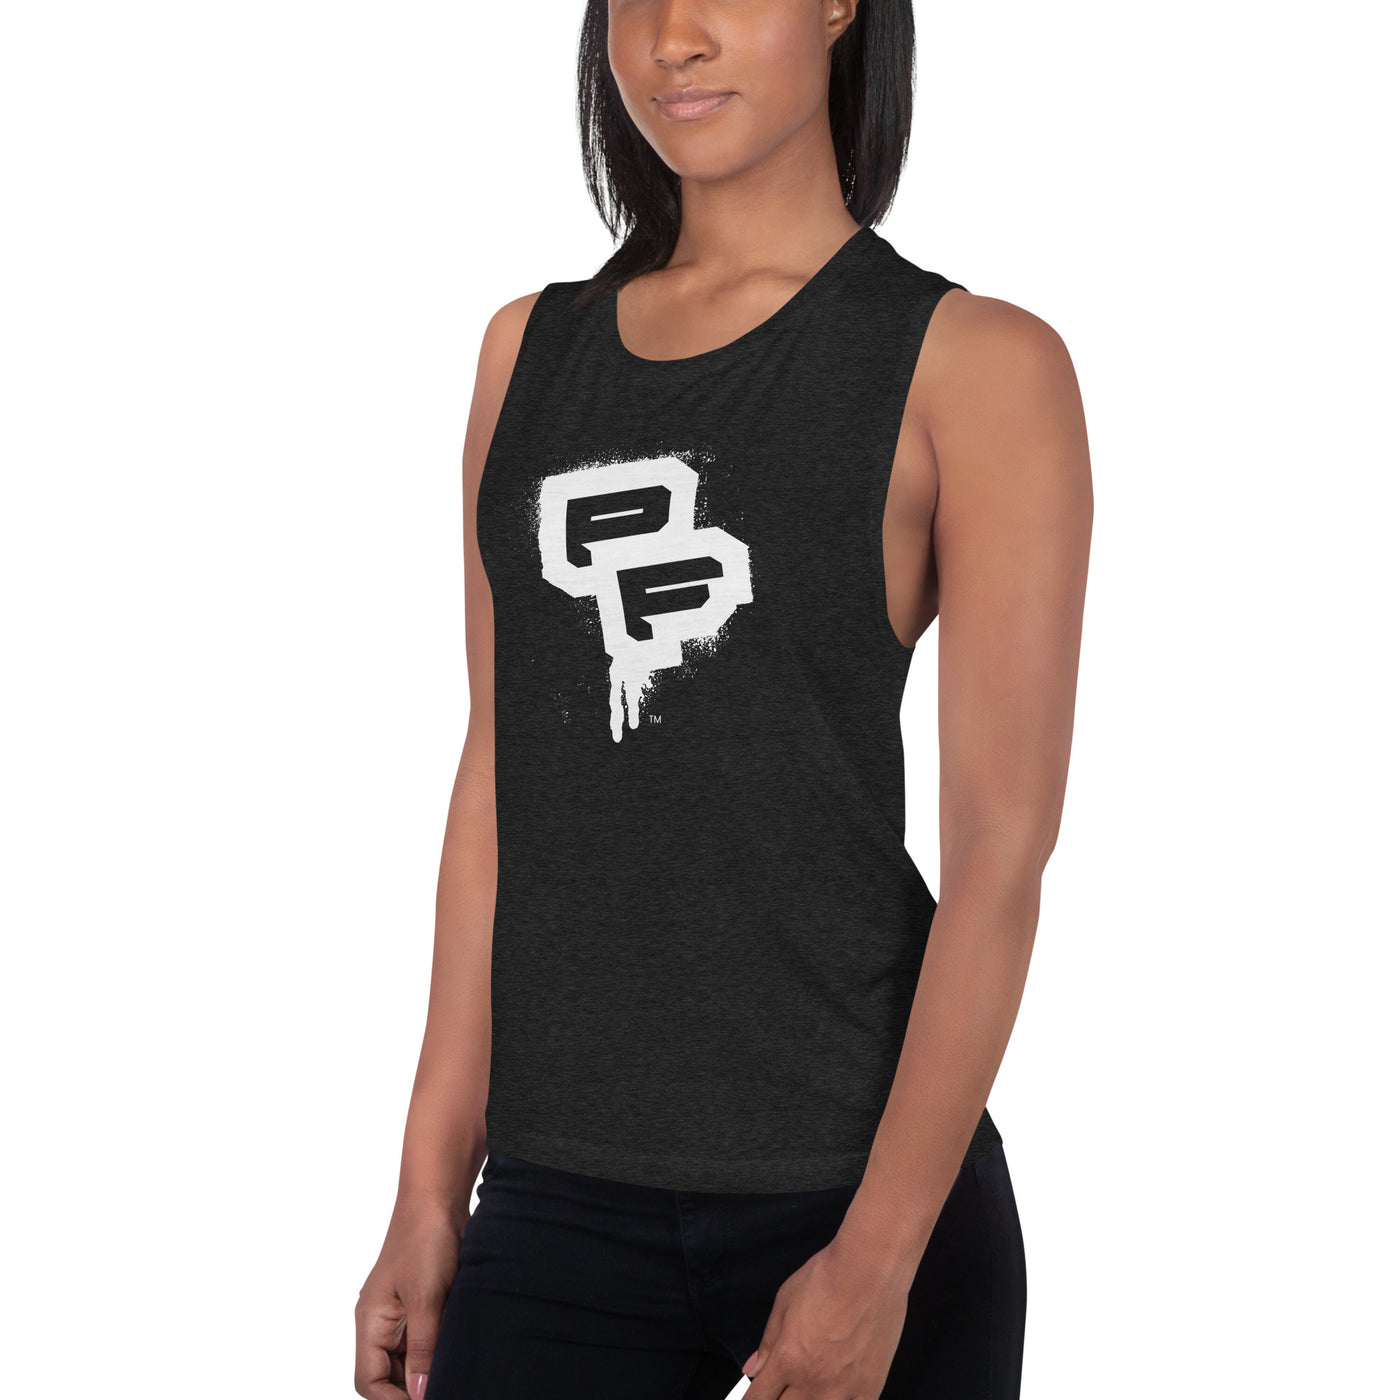 PF Black Ladies’ Muscle Tank